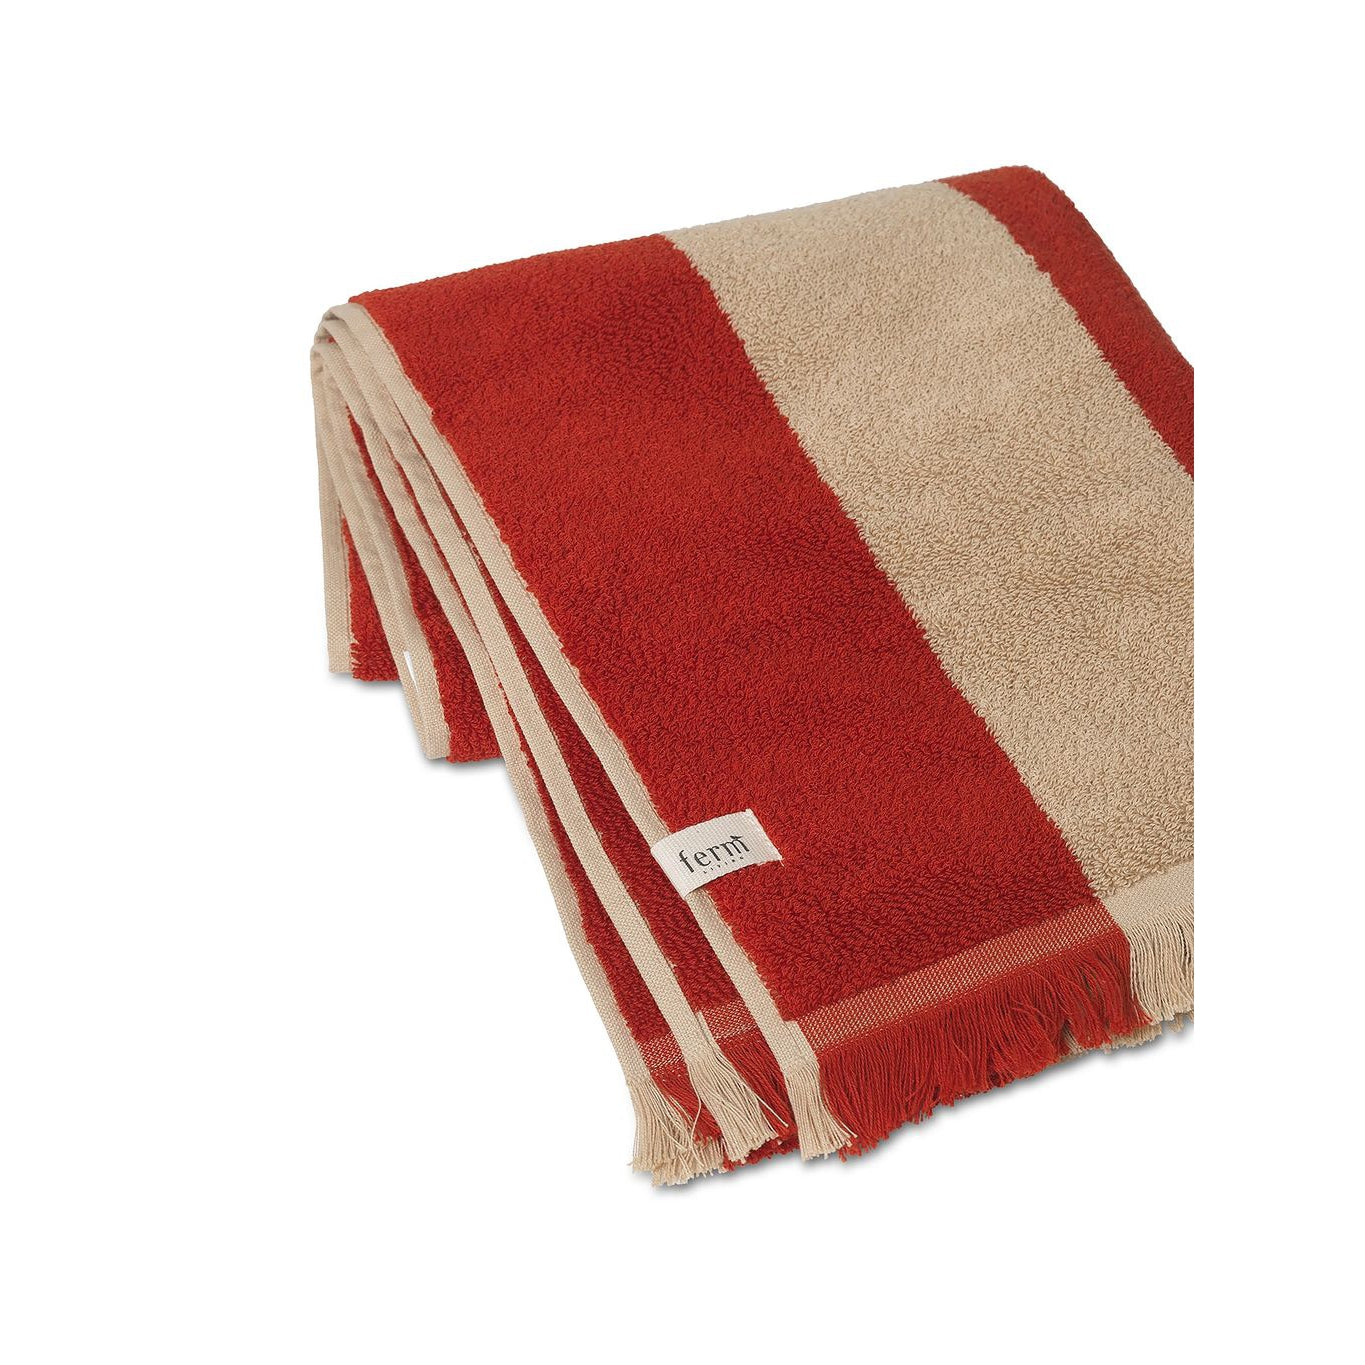 Ferm Living Alee handduk 50x100 cm, lätt kamel/röd